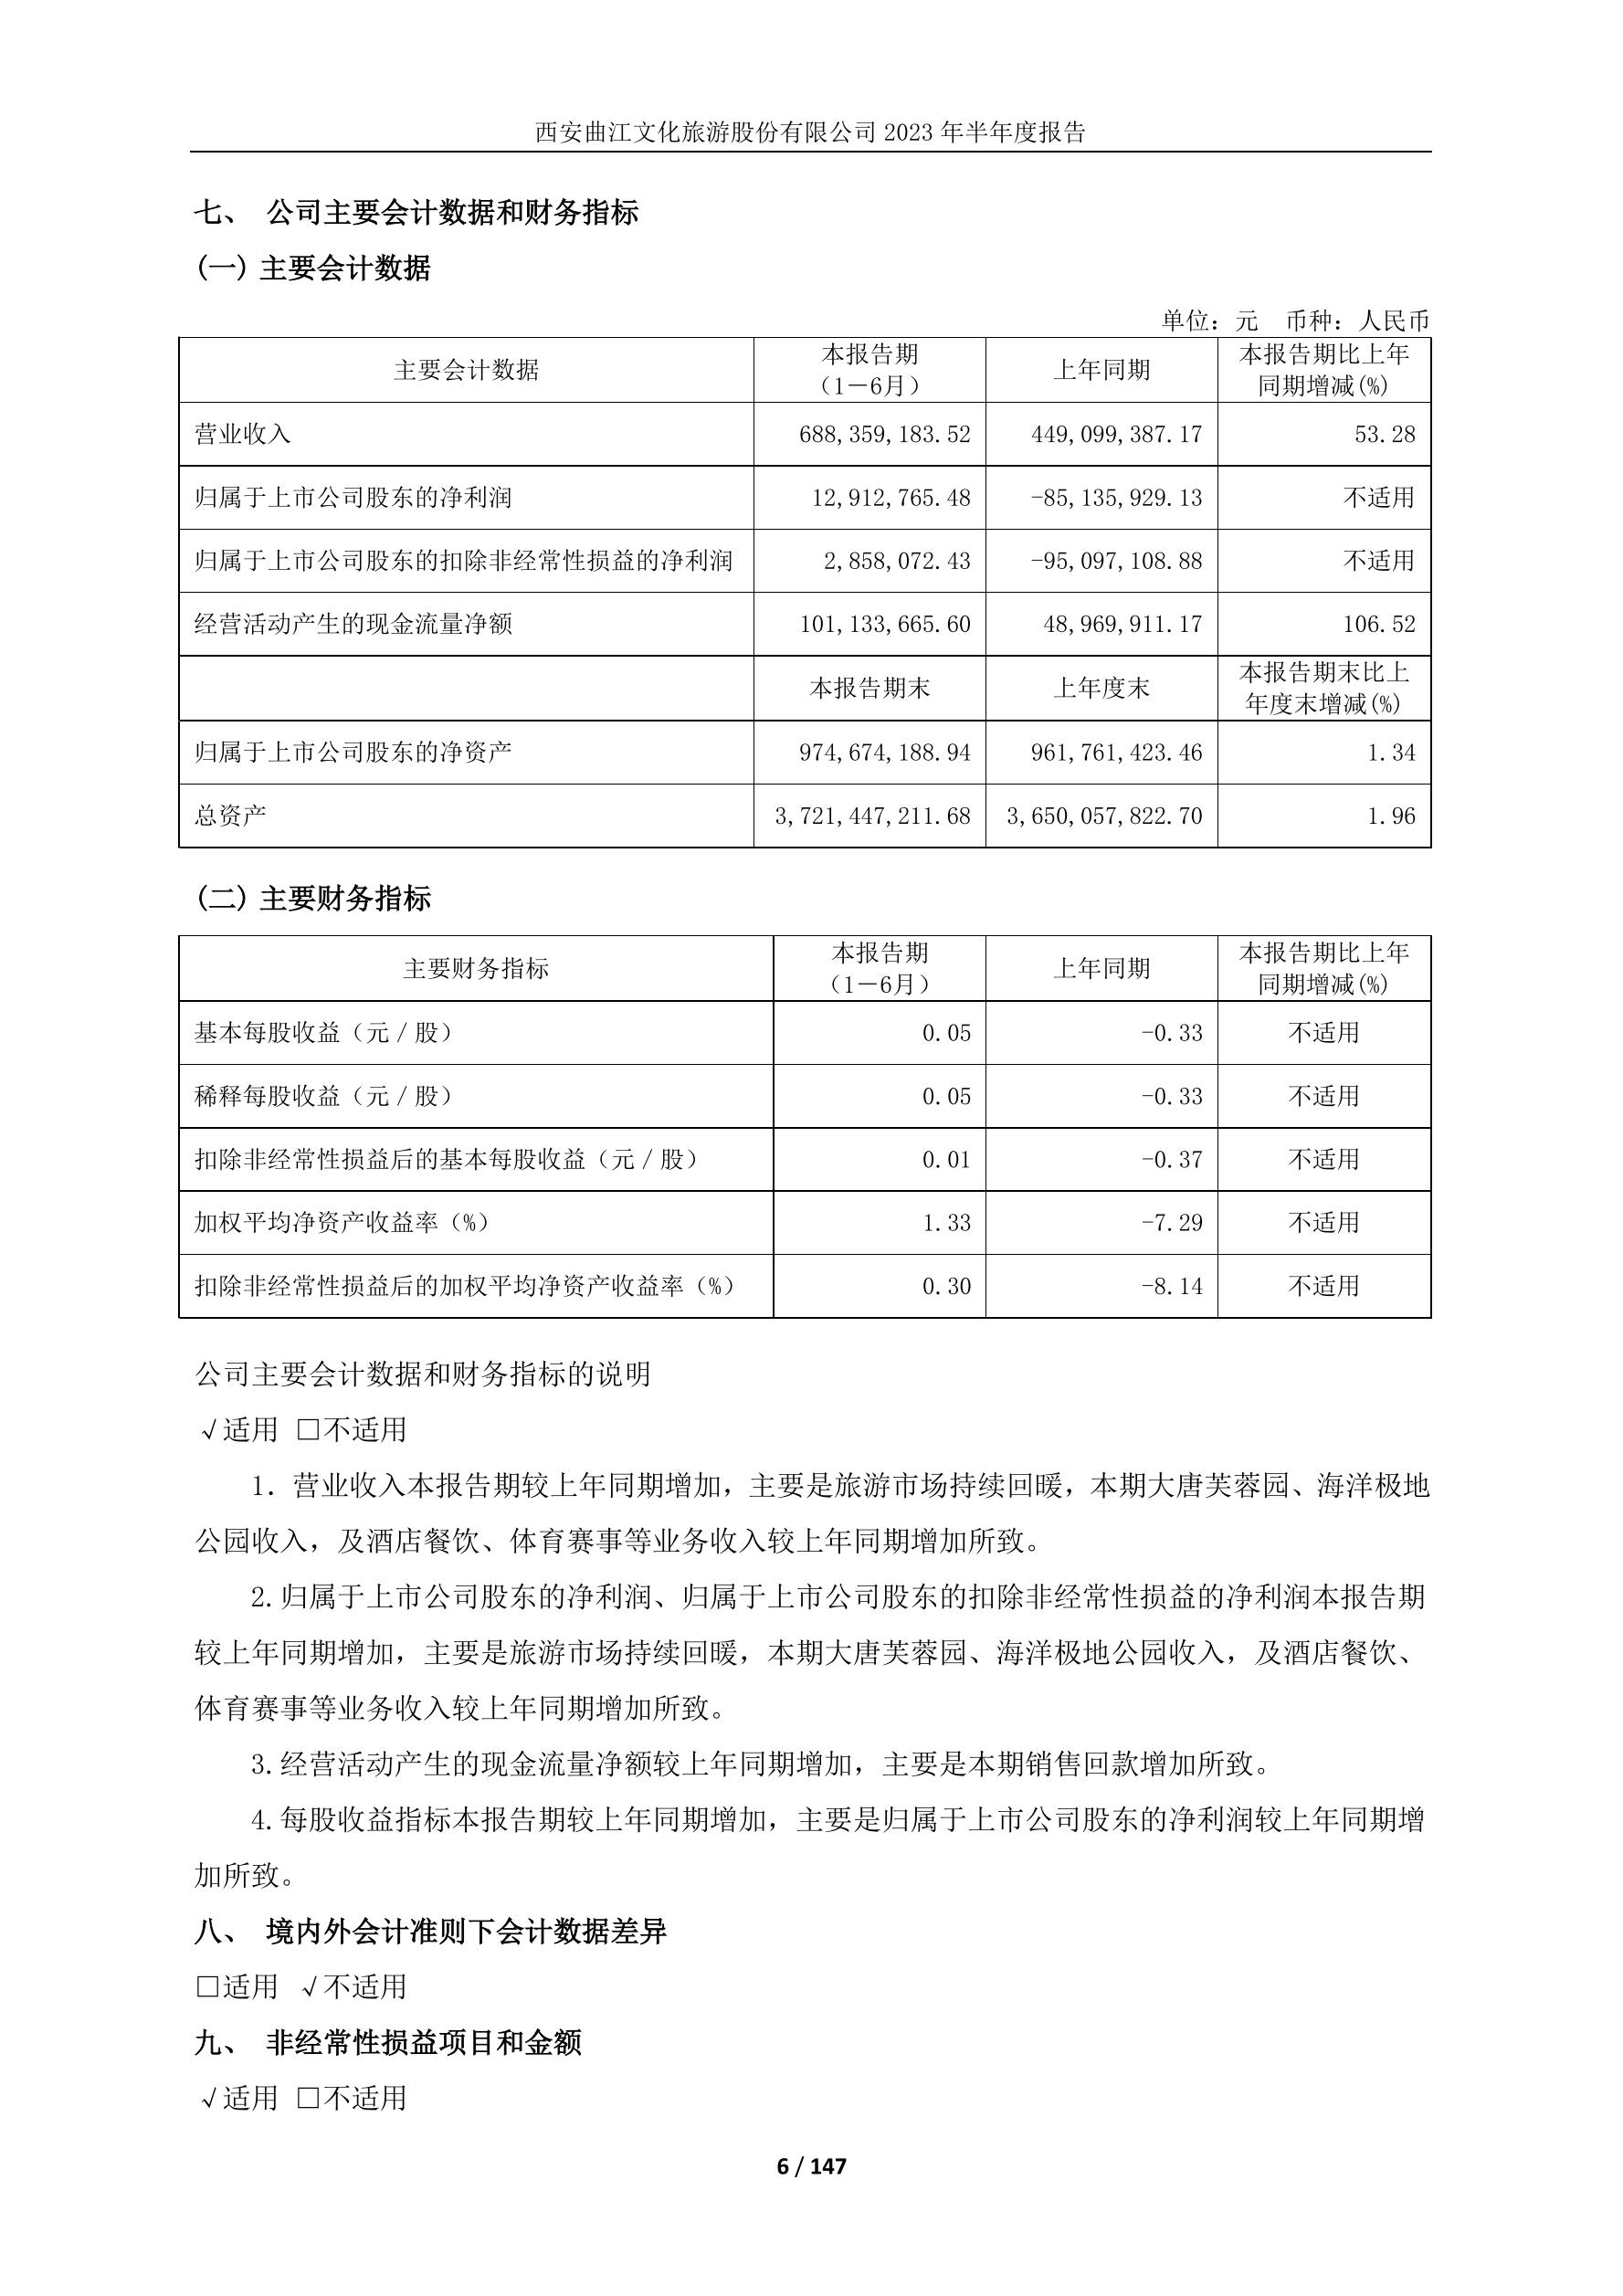 曲江文旅称已收政府补助618.6万元 此前预告2019年净利下滑超40%-新闻频道-和讯网